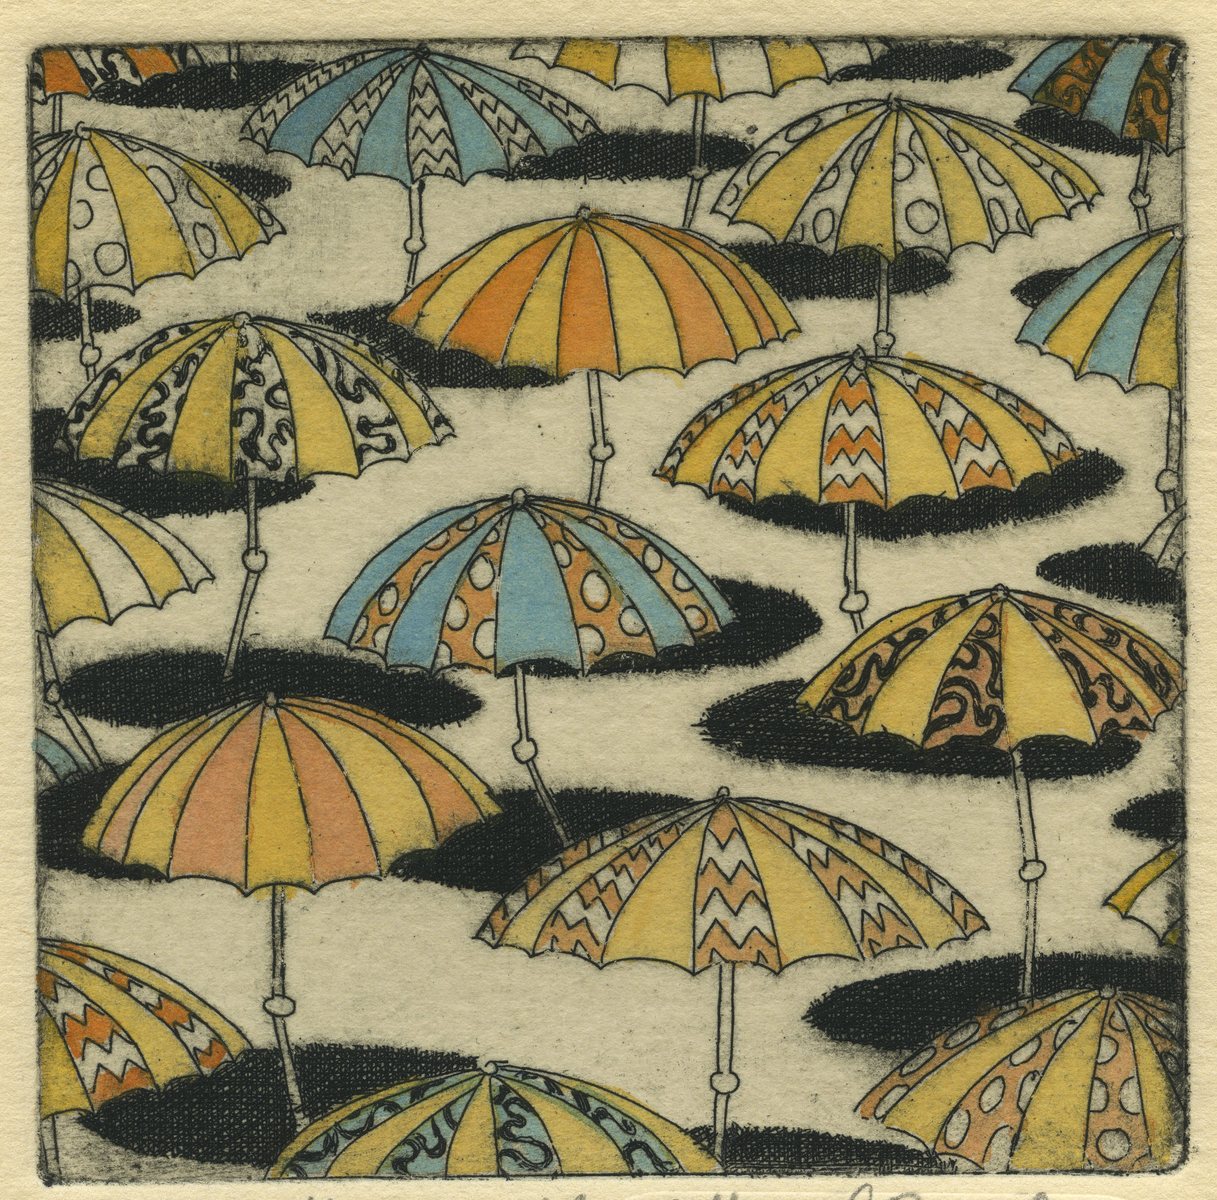 Umbrellas : Congregated Images